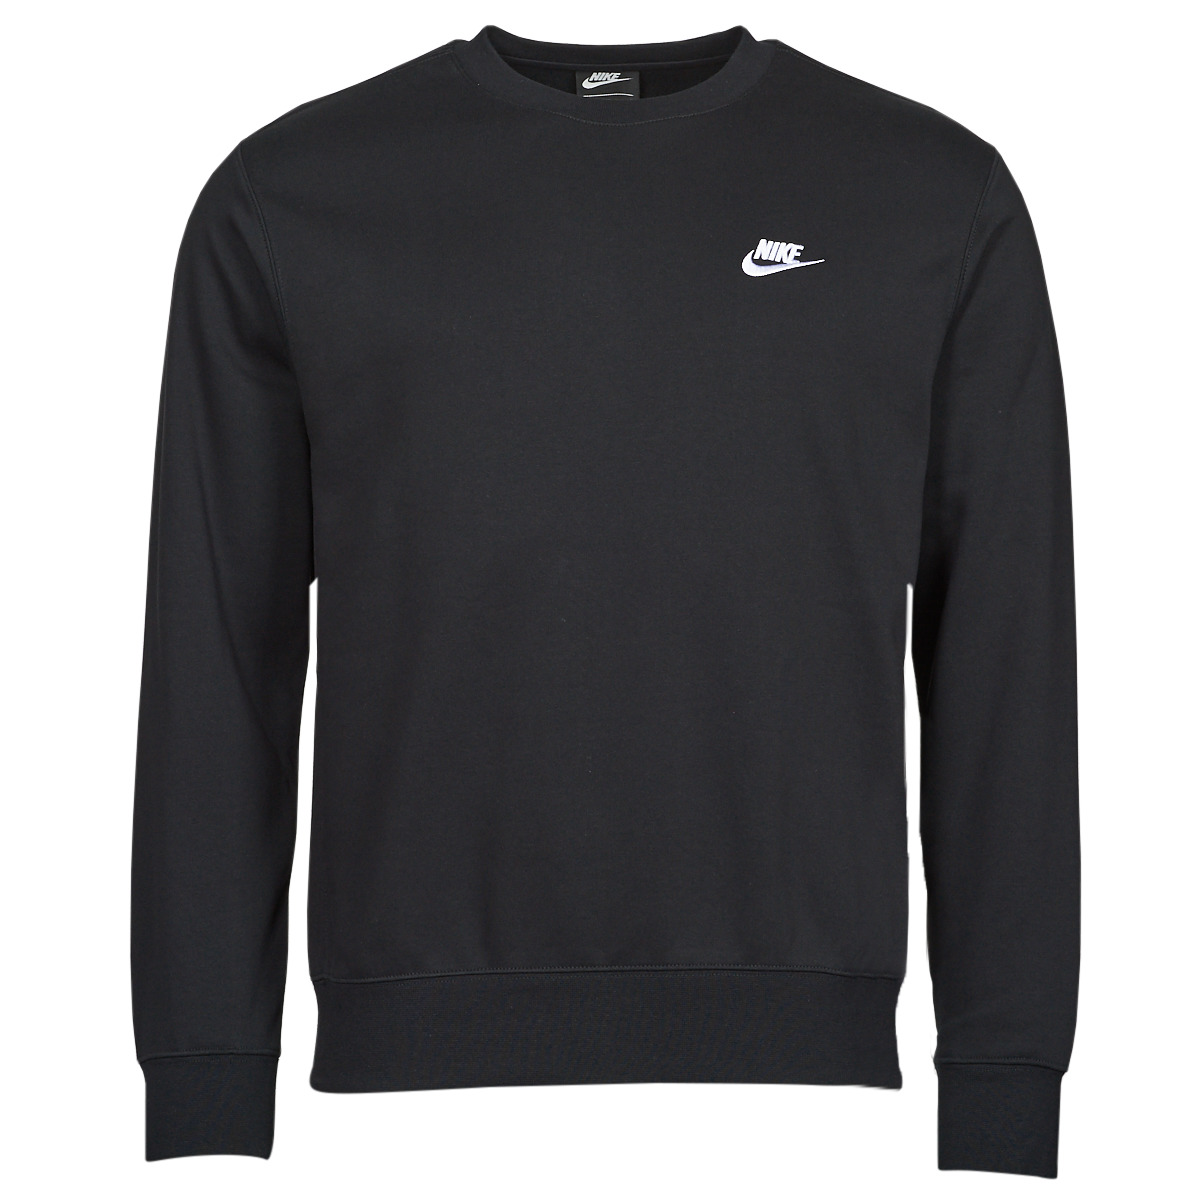 Nike - NSW Club Fleece Crew - Zwarte Sweater - S - Zwart